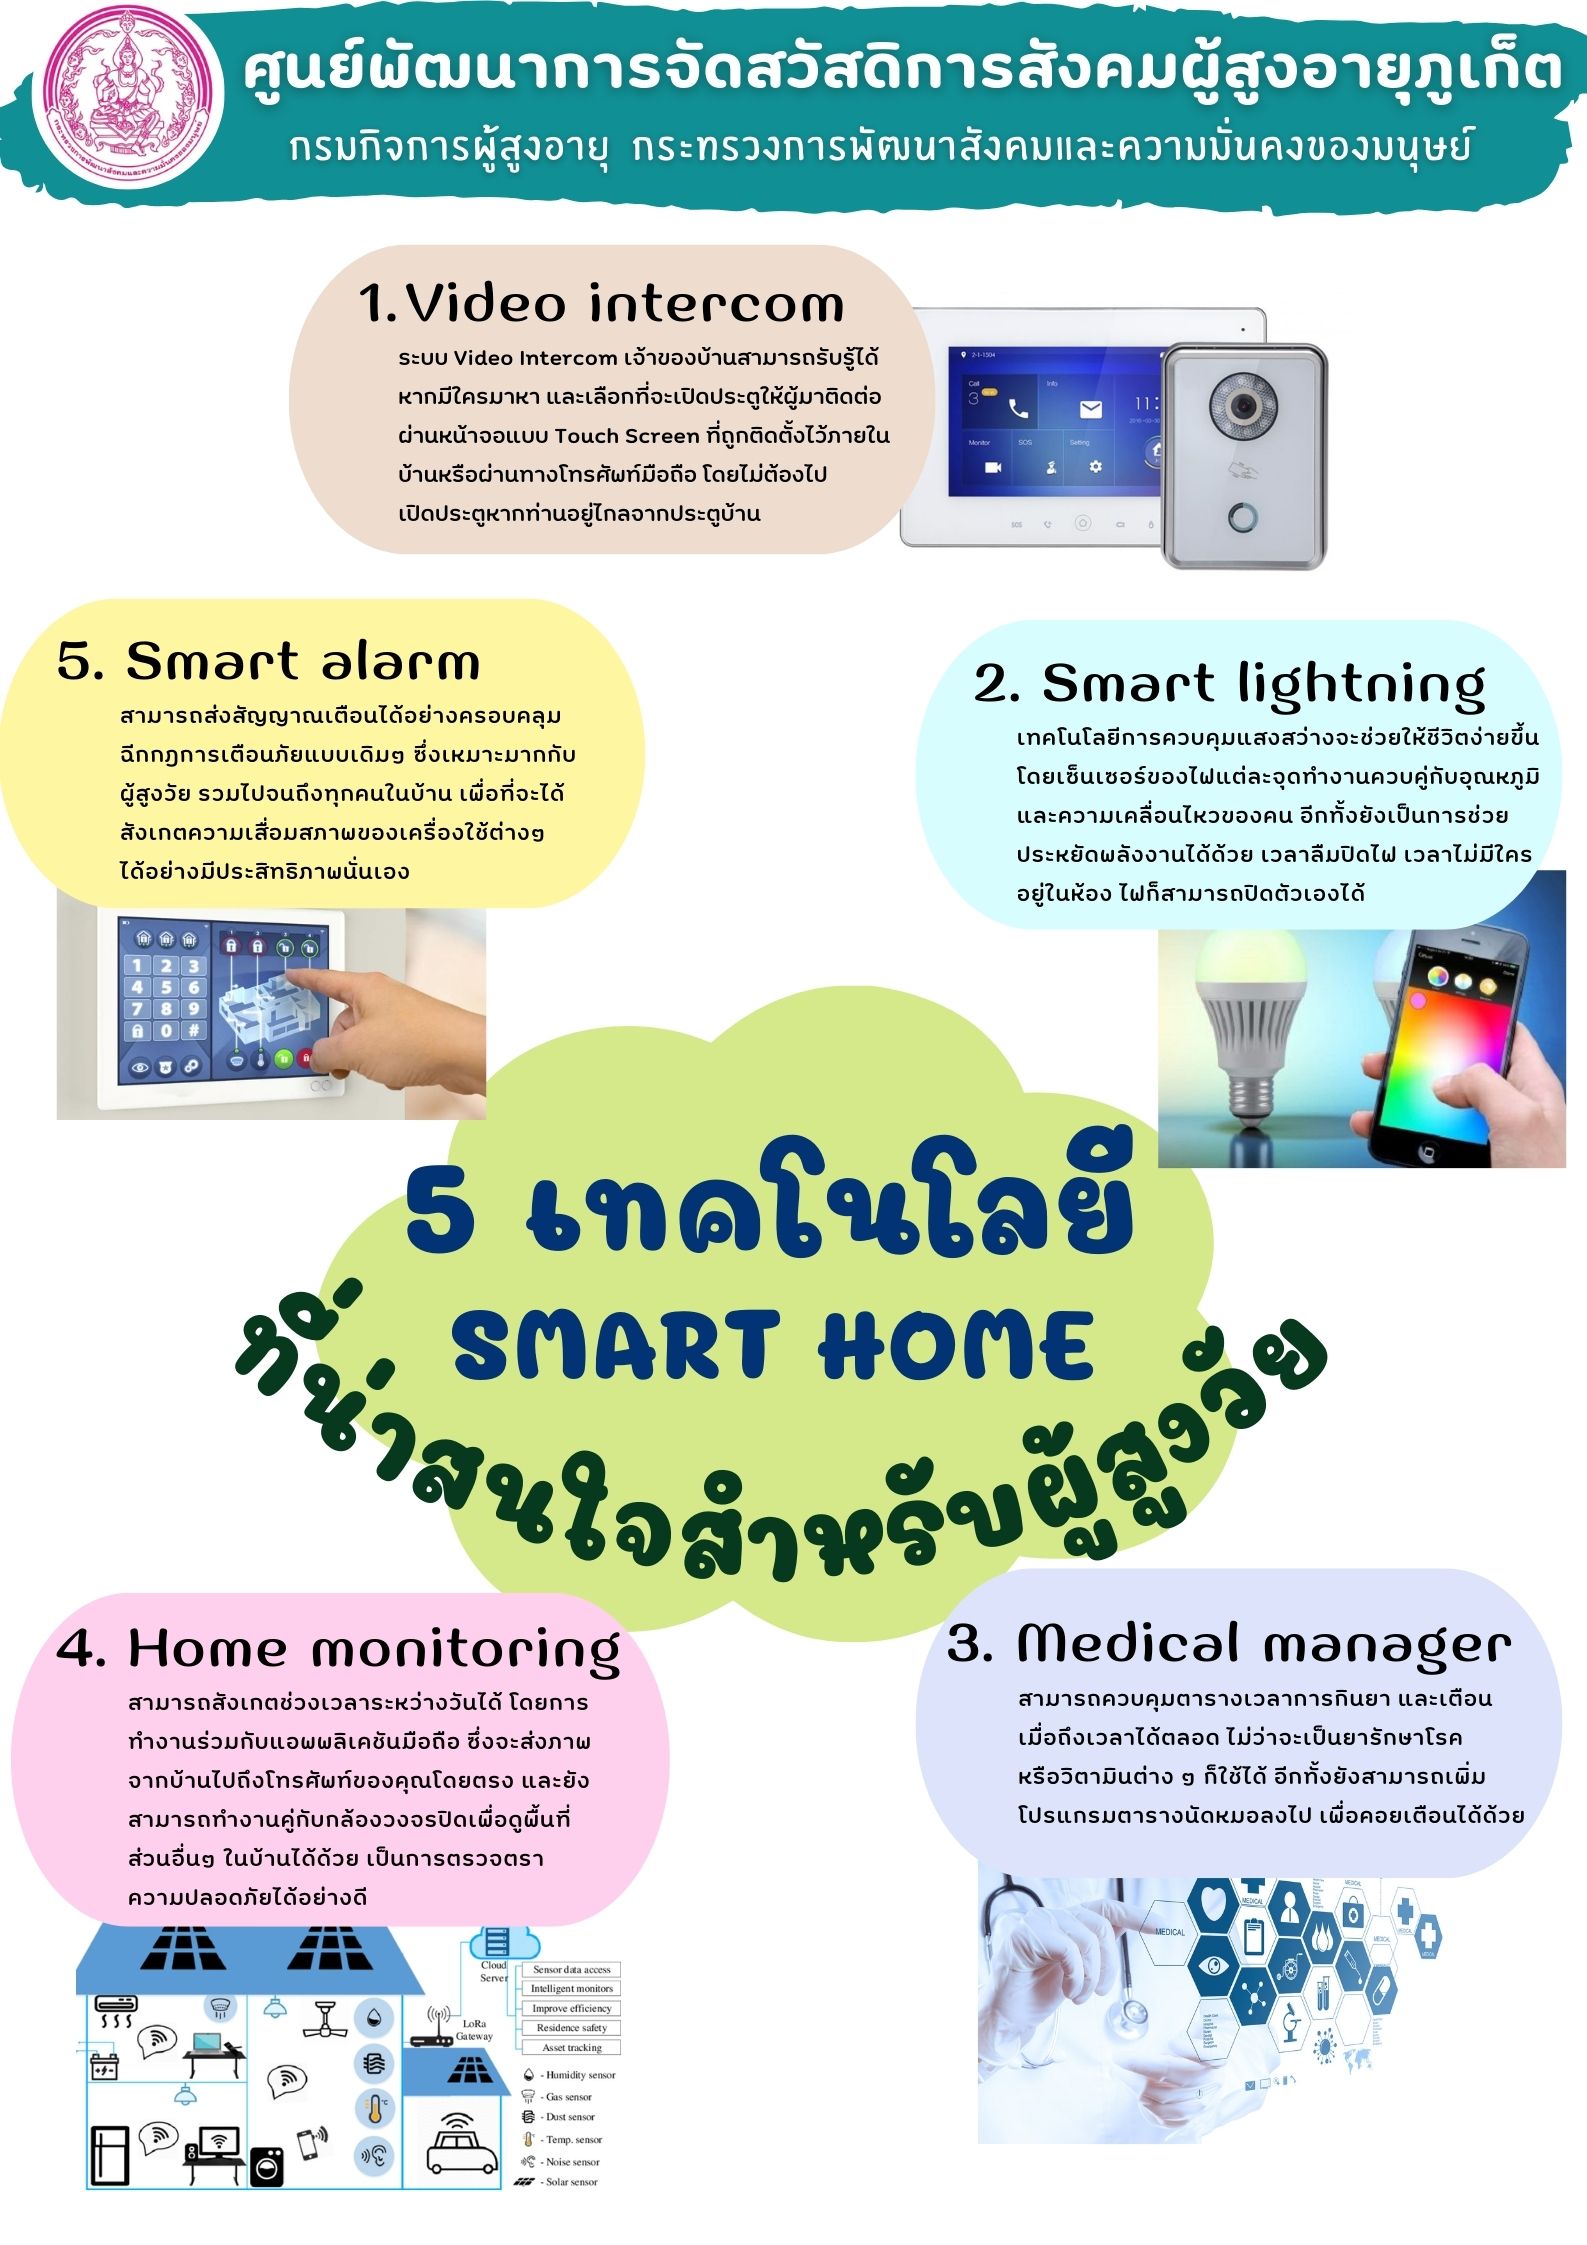 5 เทคโนโลยี SMART HOME ที่น่าสนใจสำหรับผู้สูงวัย 